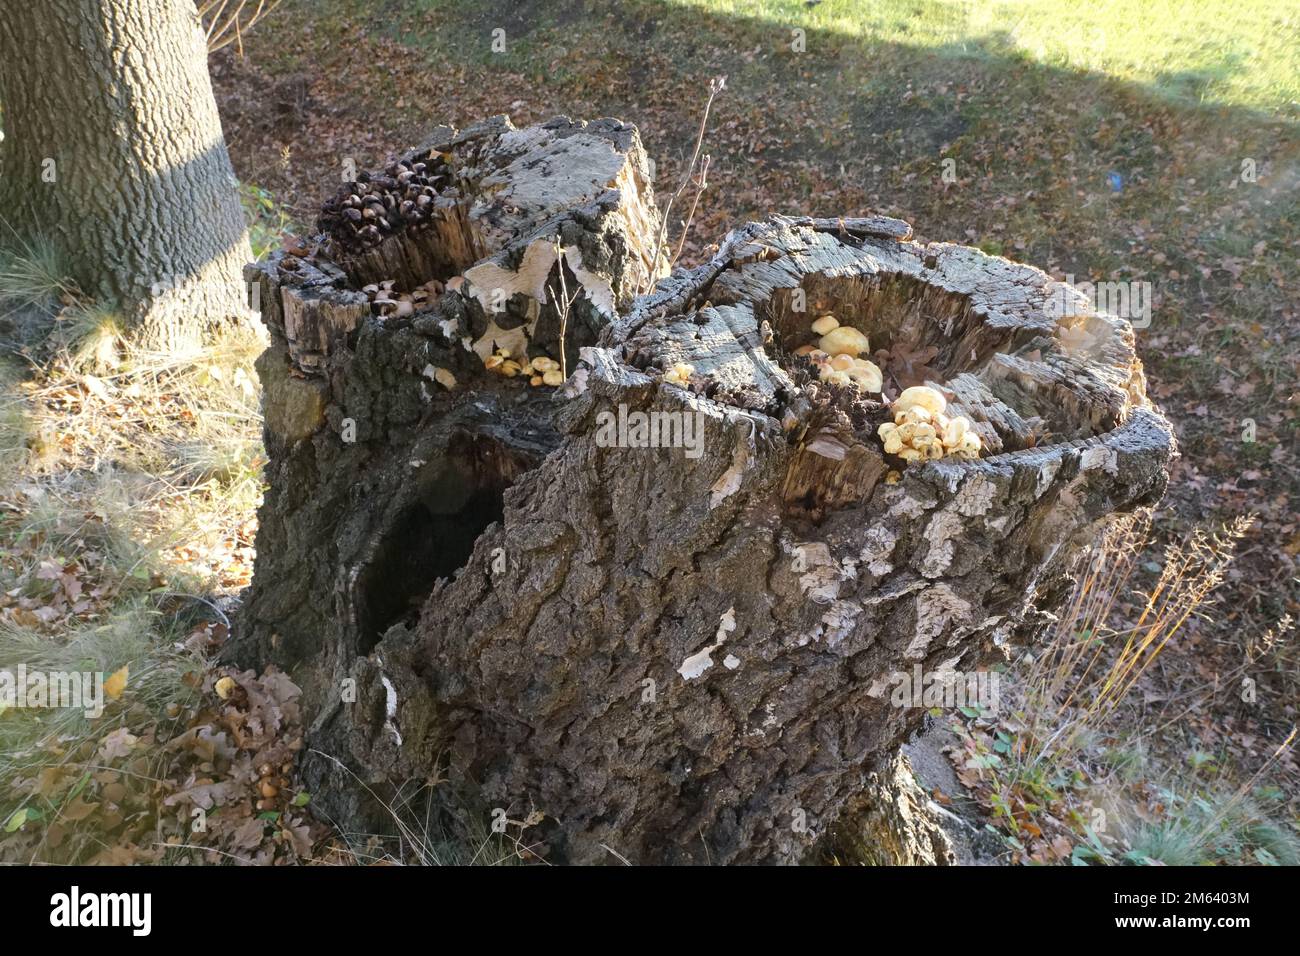 Pilzgruppe im abgestorbenen Baumstumpf Foto de stock